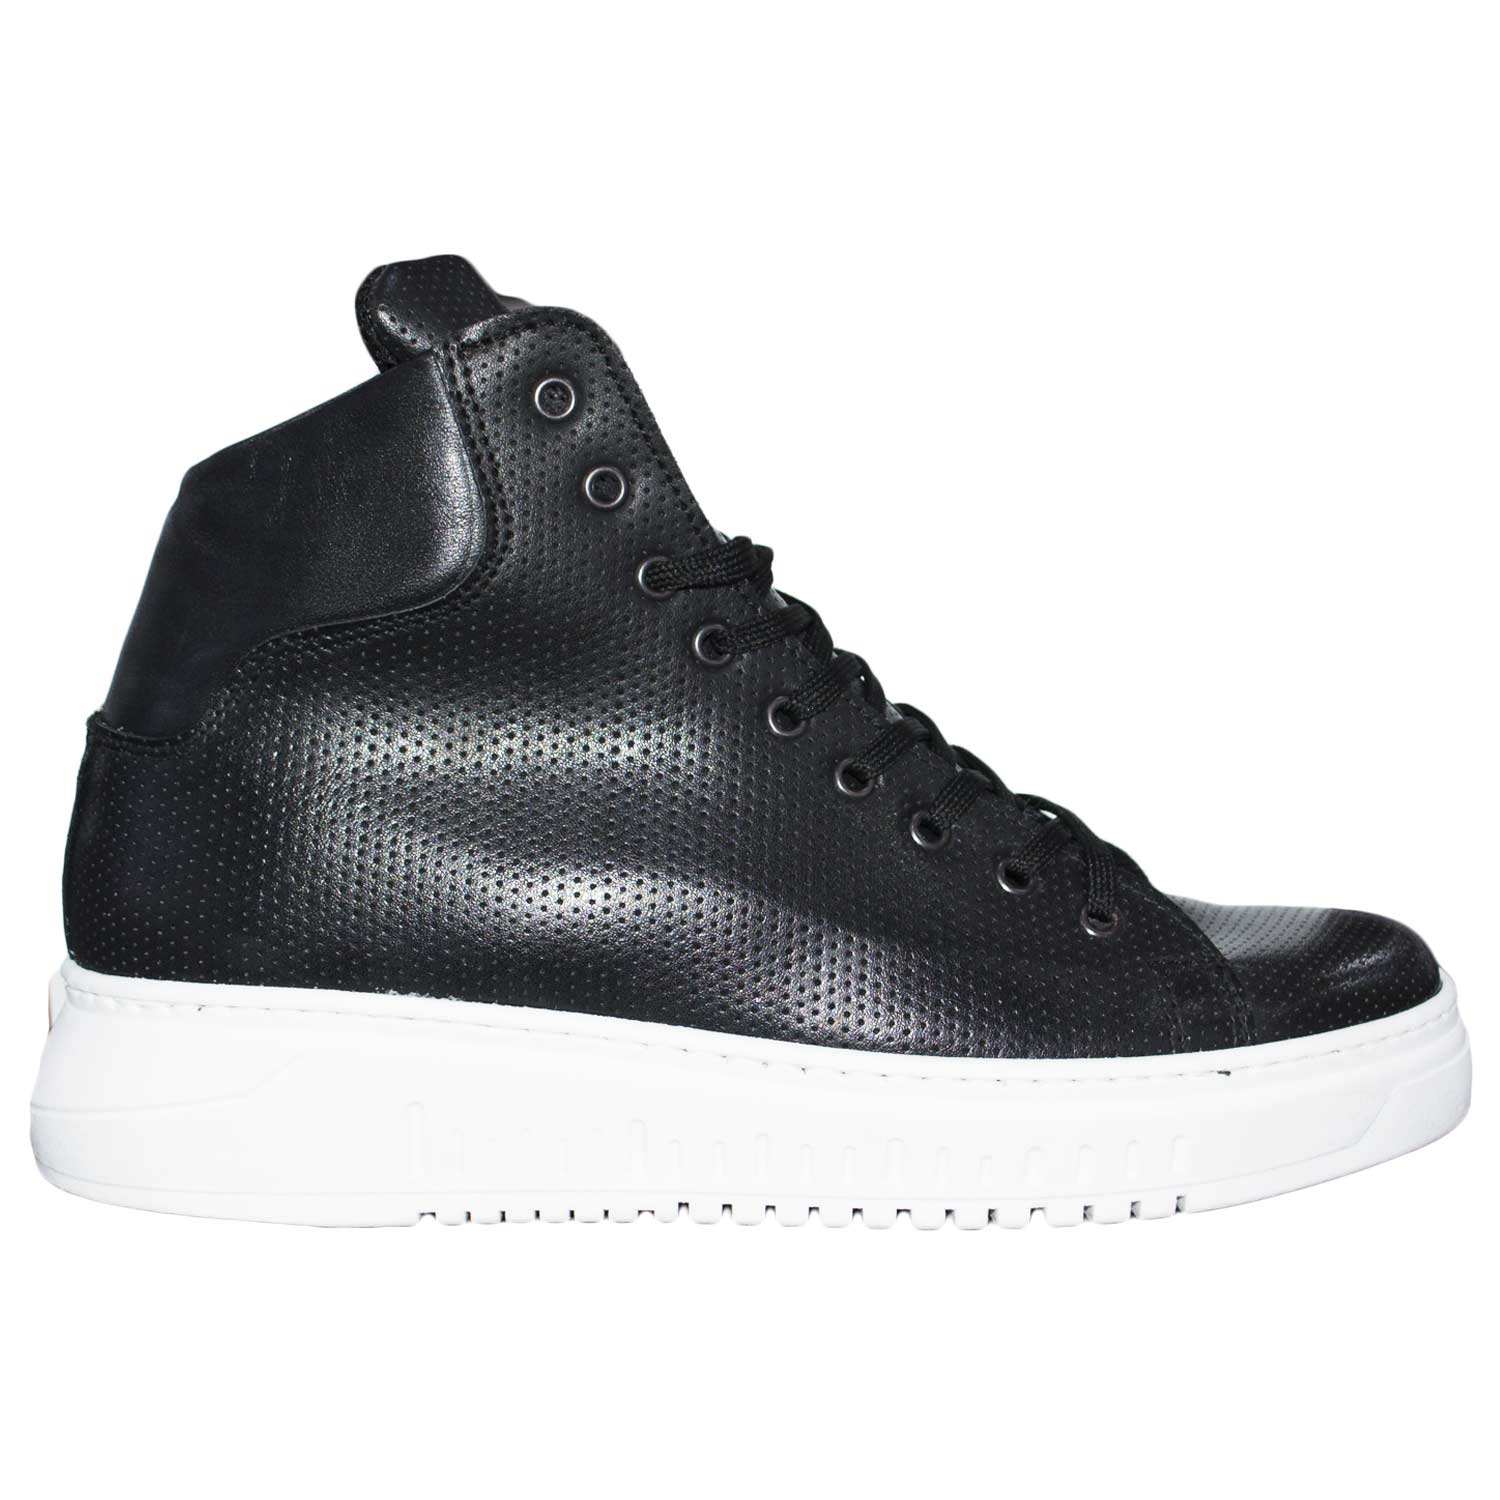 Sneakers alta art 250 bianco fondo doppio army vera pelle nero microforato rifinimenti in pelle made in italy.